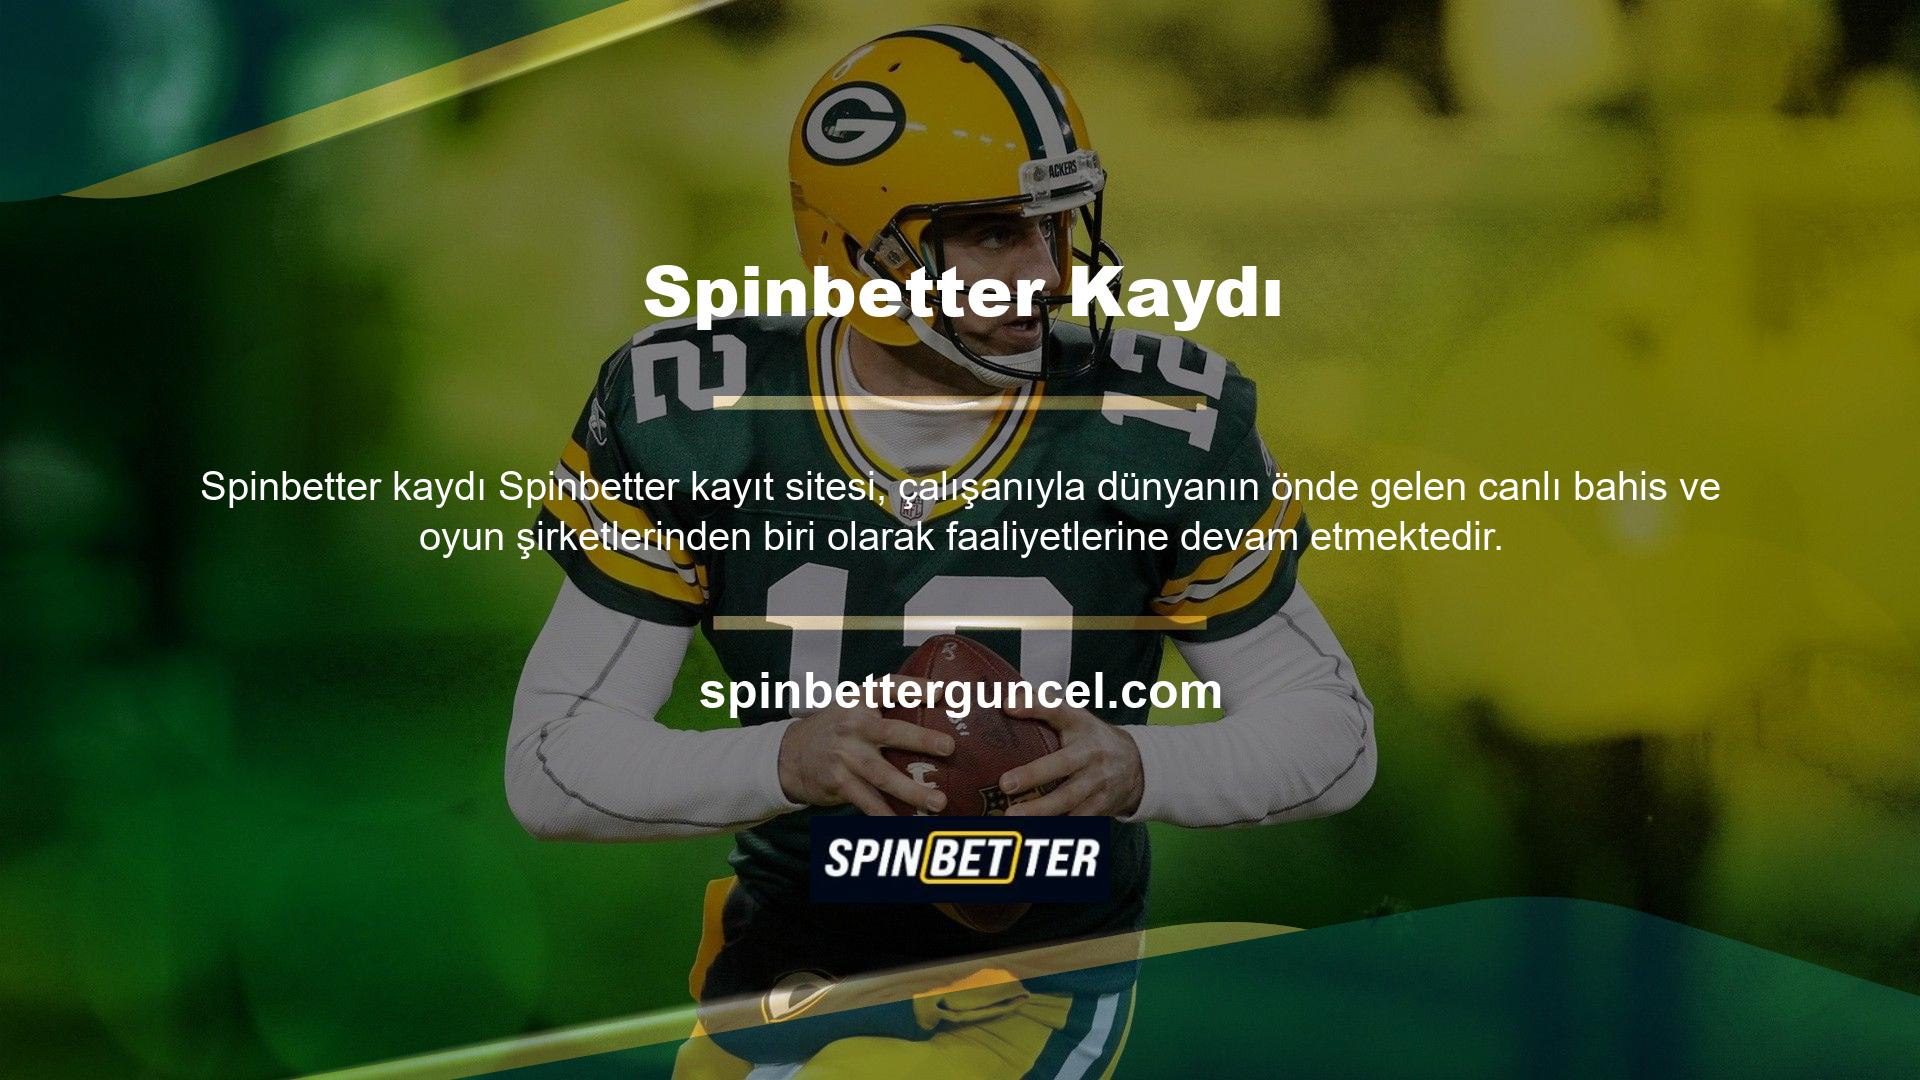 Spinbetter, Türkiye ve birçok ülkedeki kullanıcılara sürekli olarak ilgili hizmetleri sunmaktadır